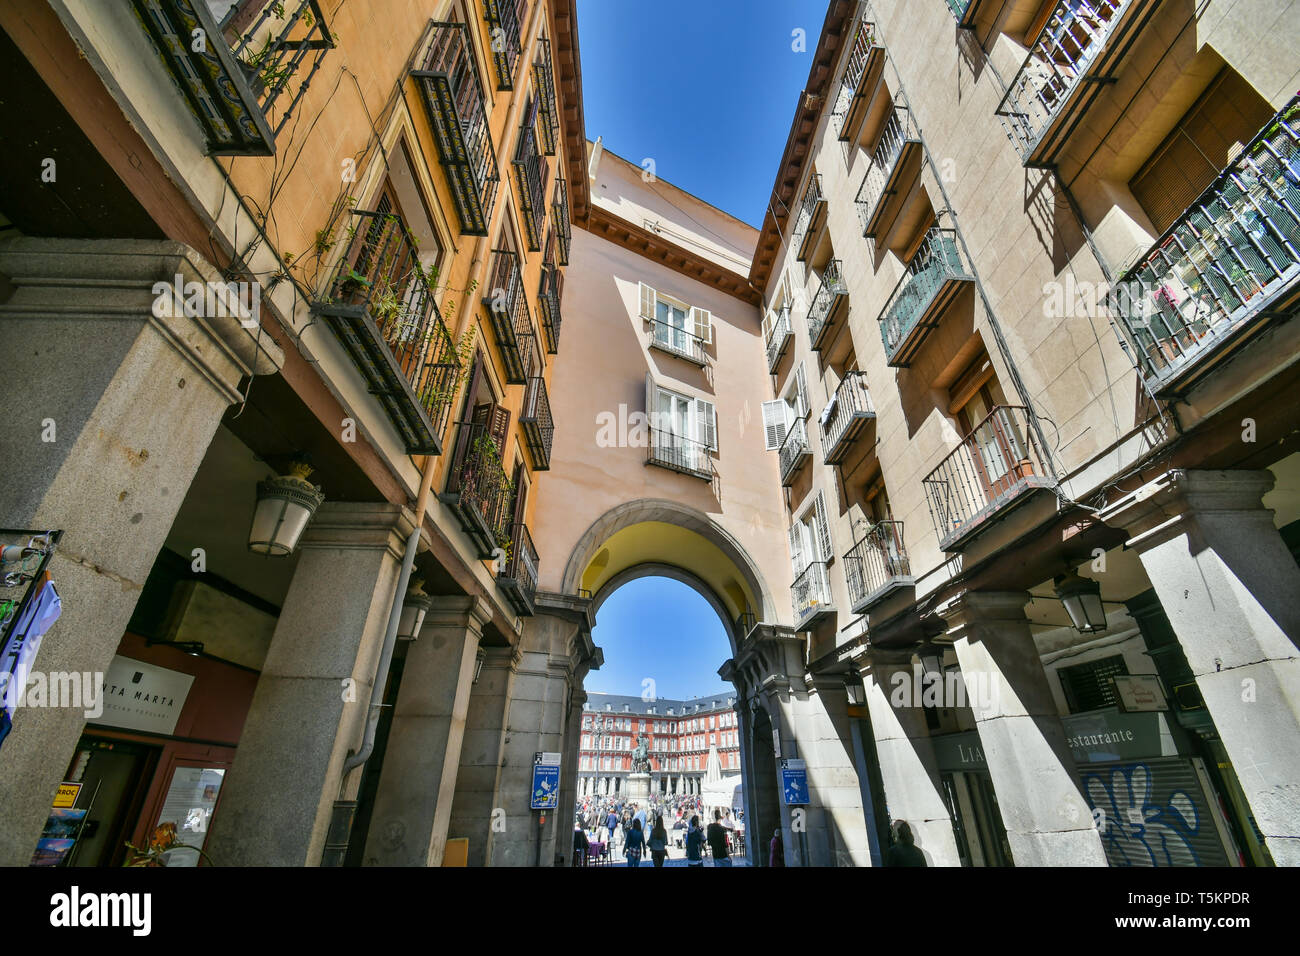 Entrance to the Plaza Mayor of Madrid Stock Photo